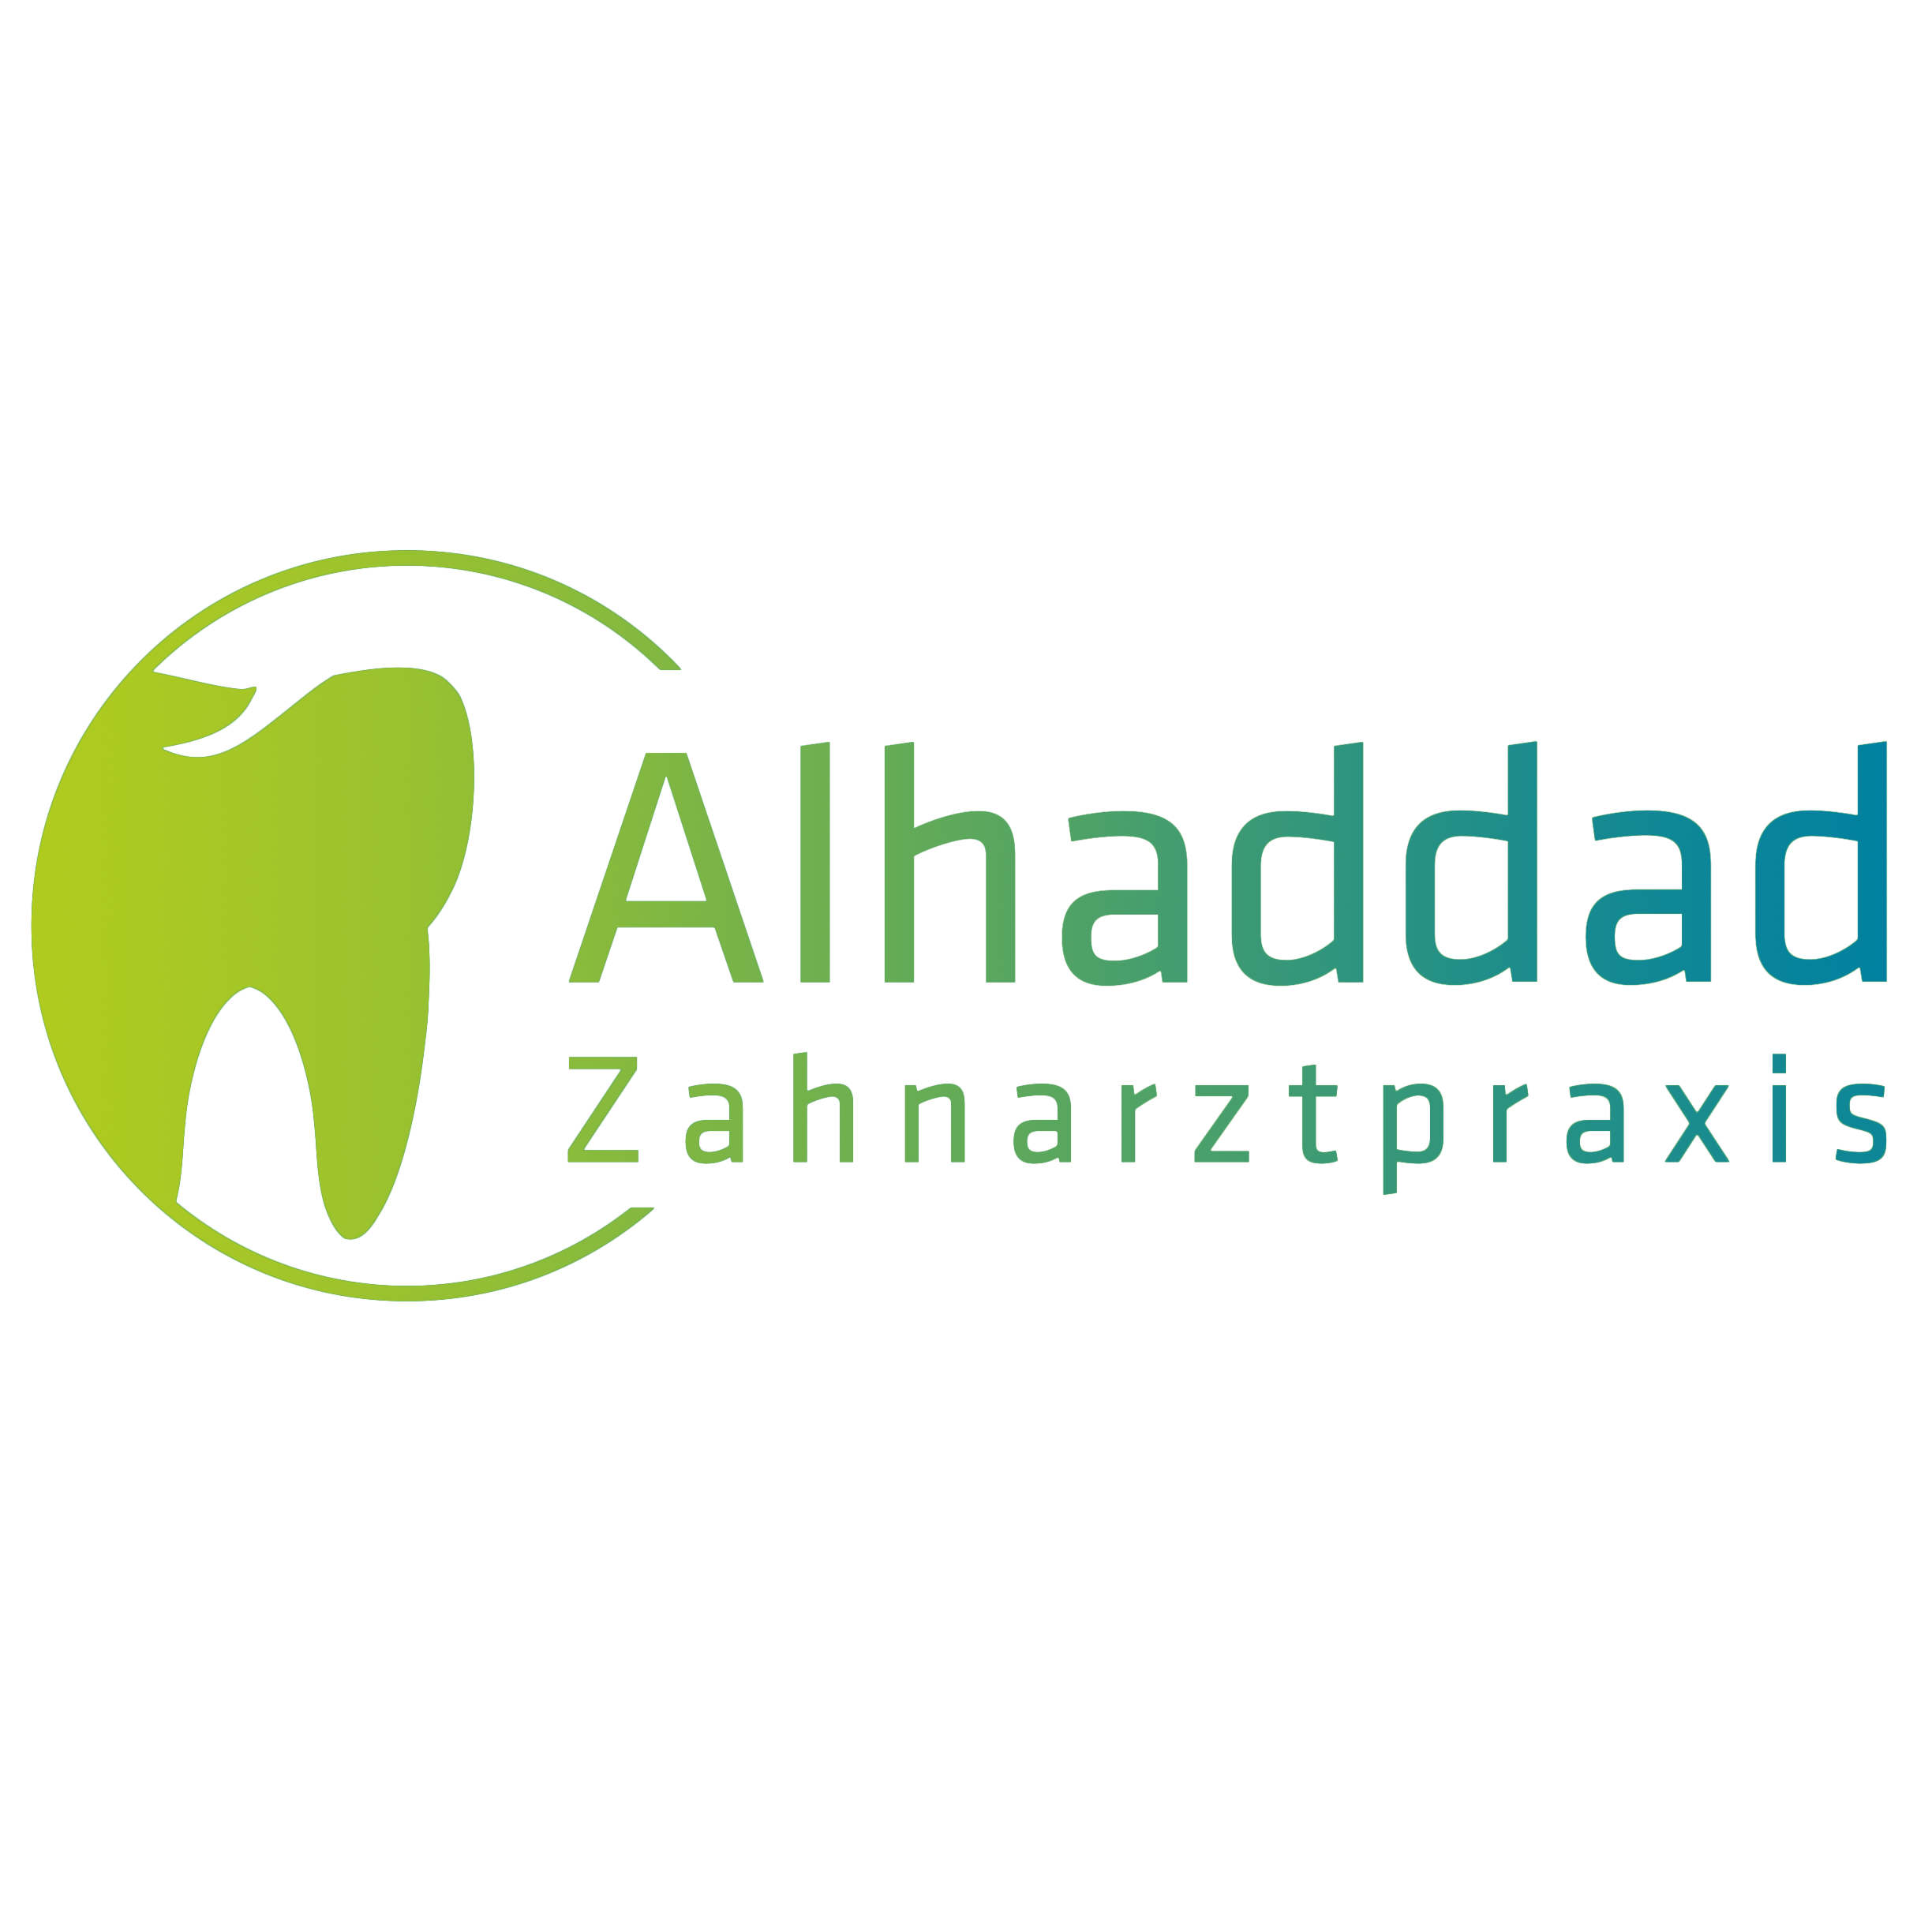 Logo Alhaddad 1x1